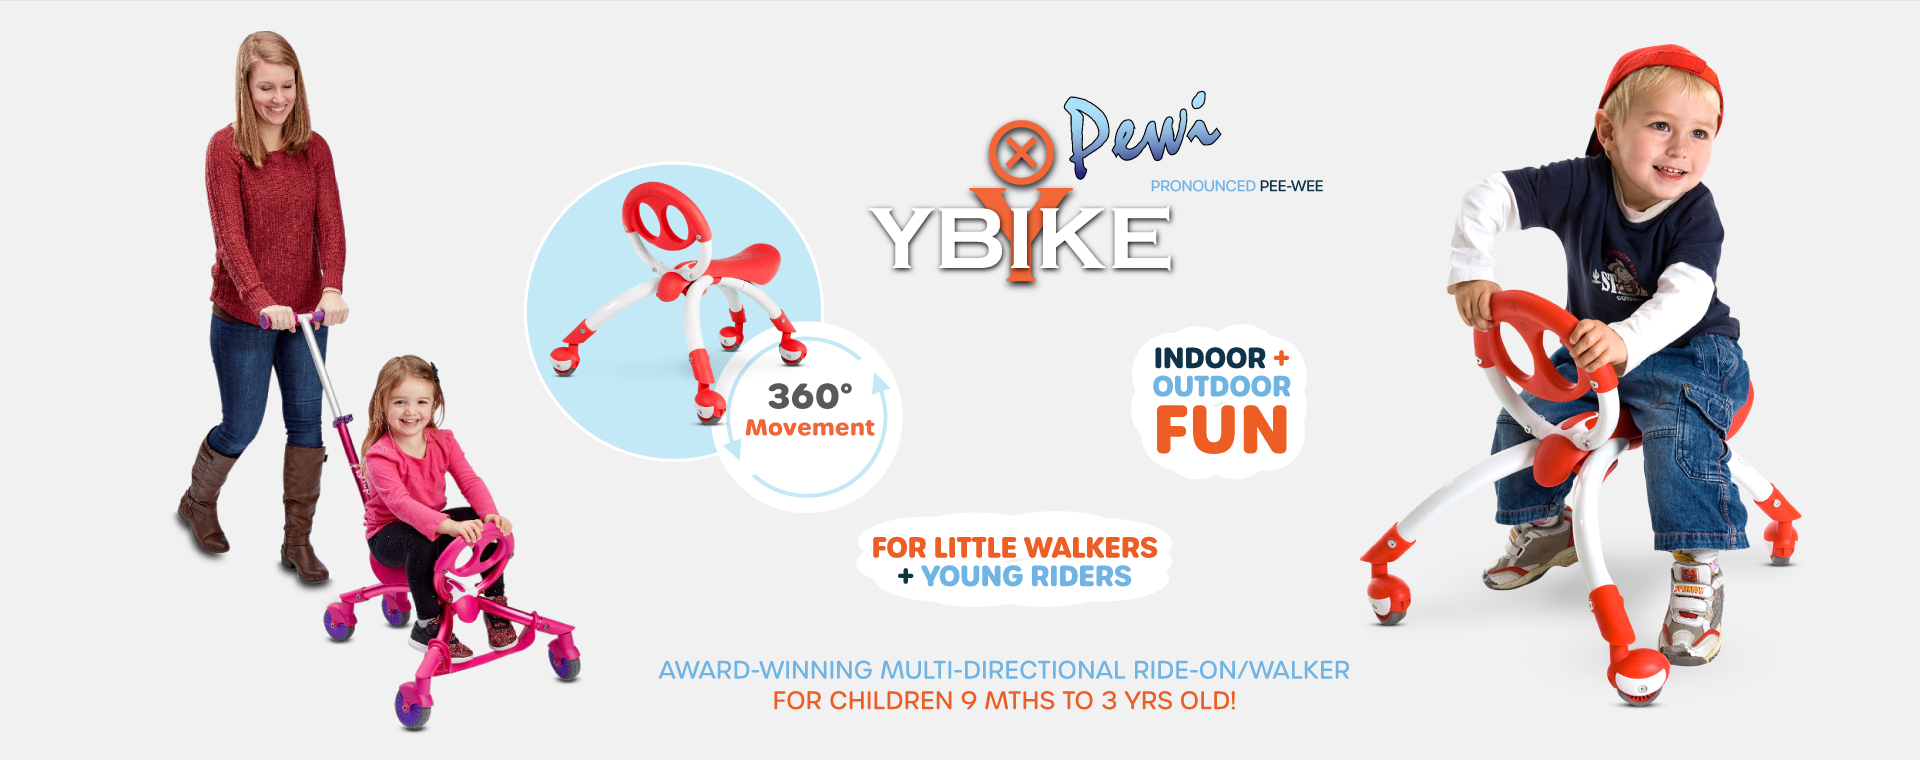 YBIKE ride on/walker toy